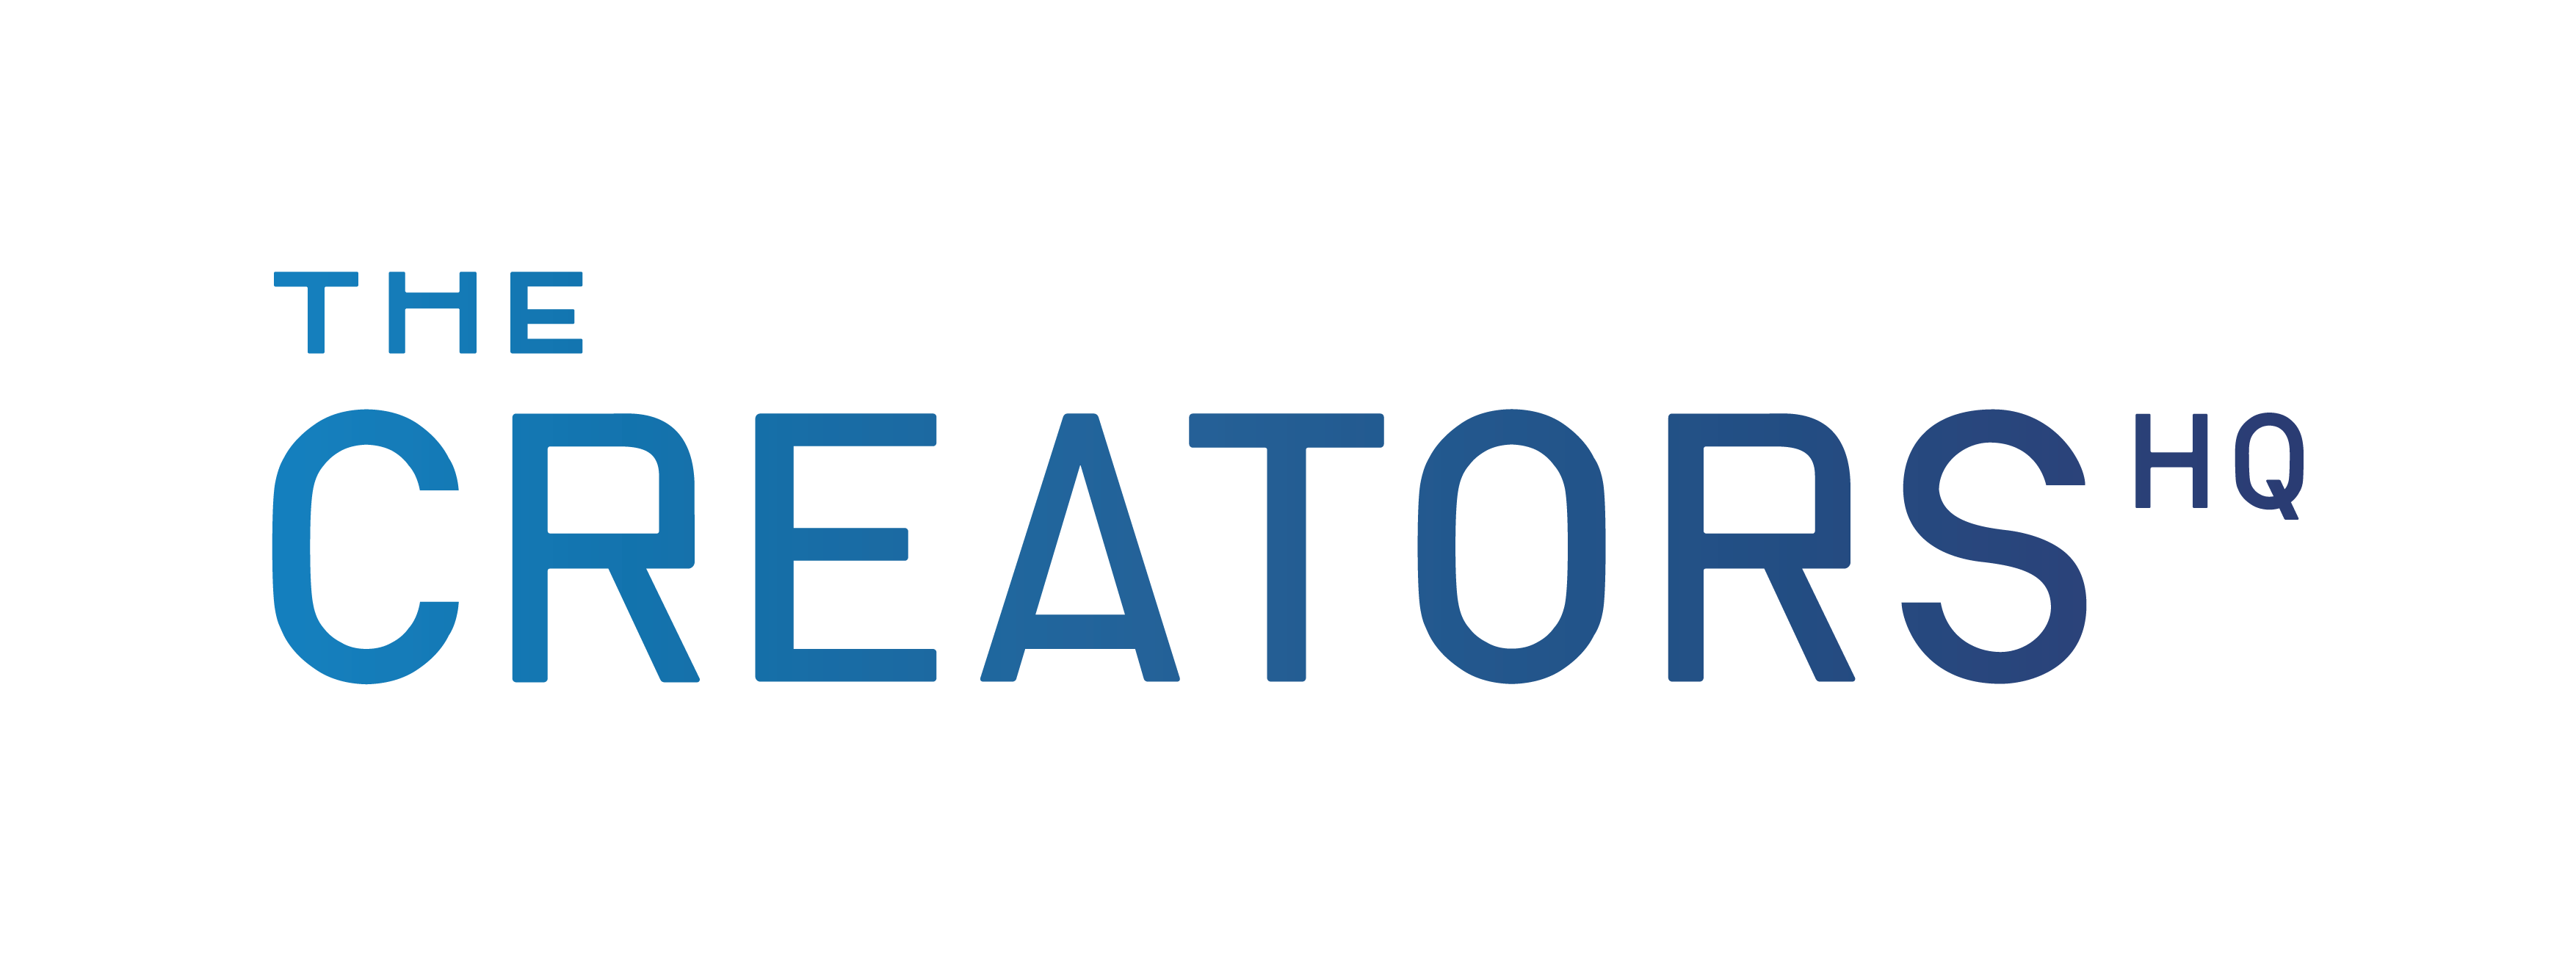 The Creators HQ Co., Ltd.